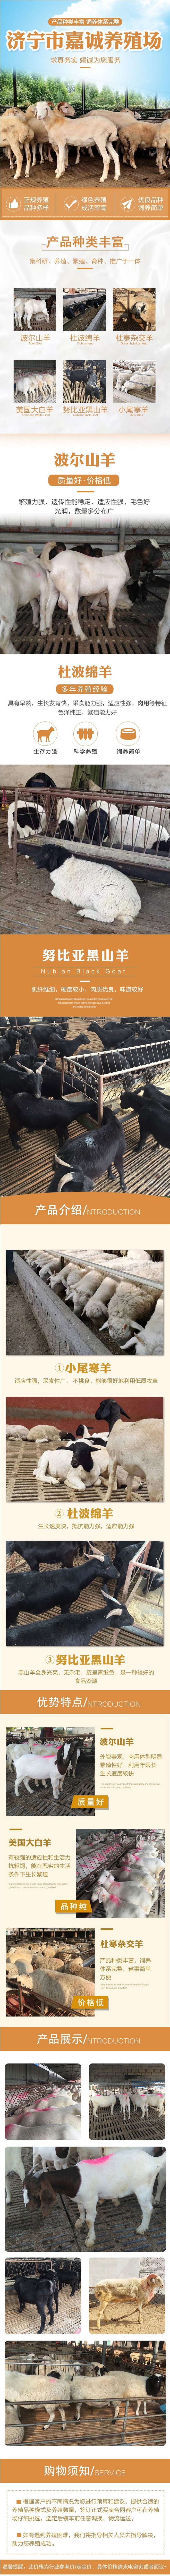 改良脱温小尾寒羊种羊-采食能力强-饲养体系完整.jpg